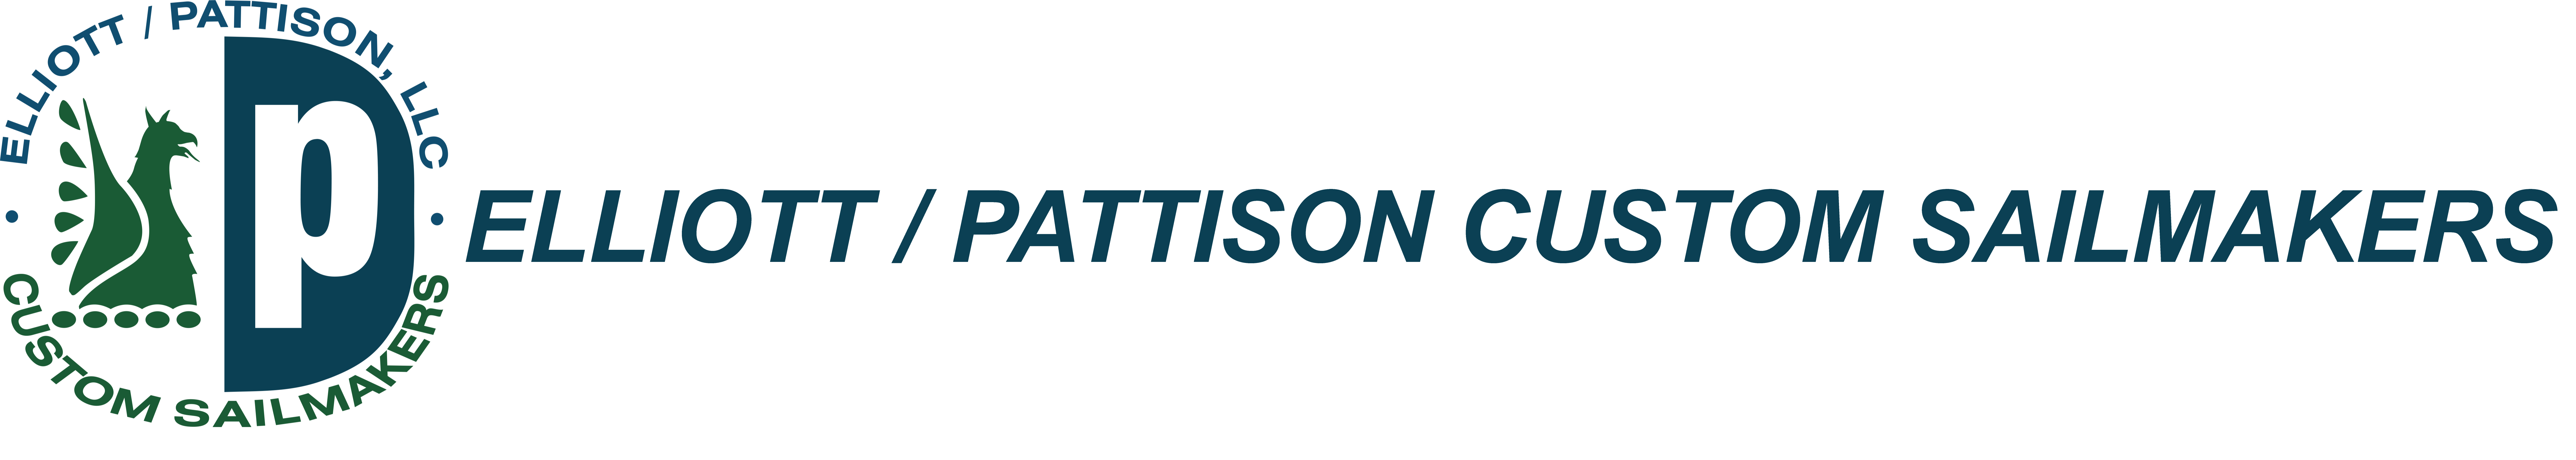 ELLIOTT / PATTISON CUSTOM SAILMAKERS